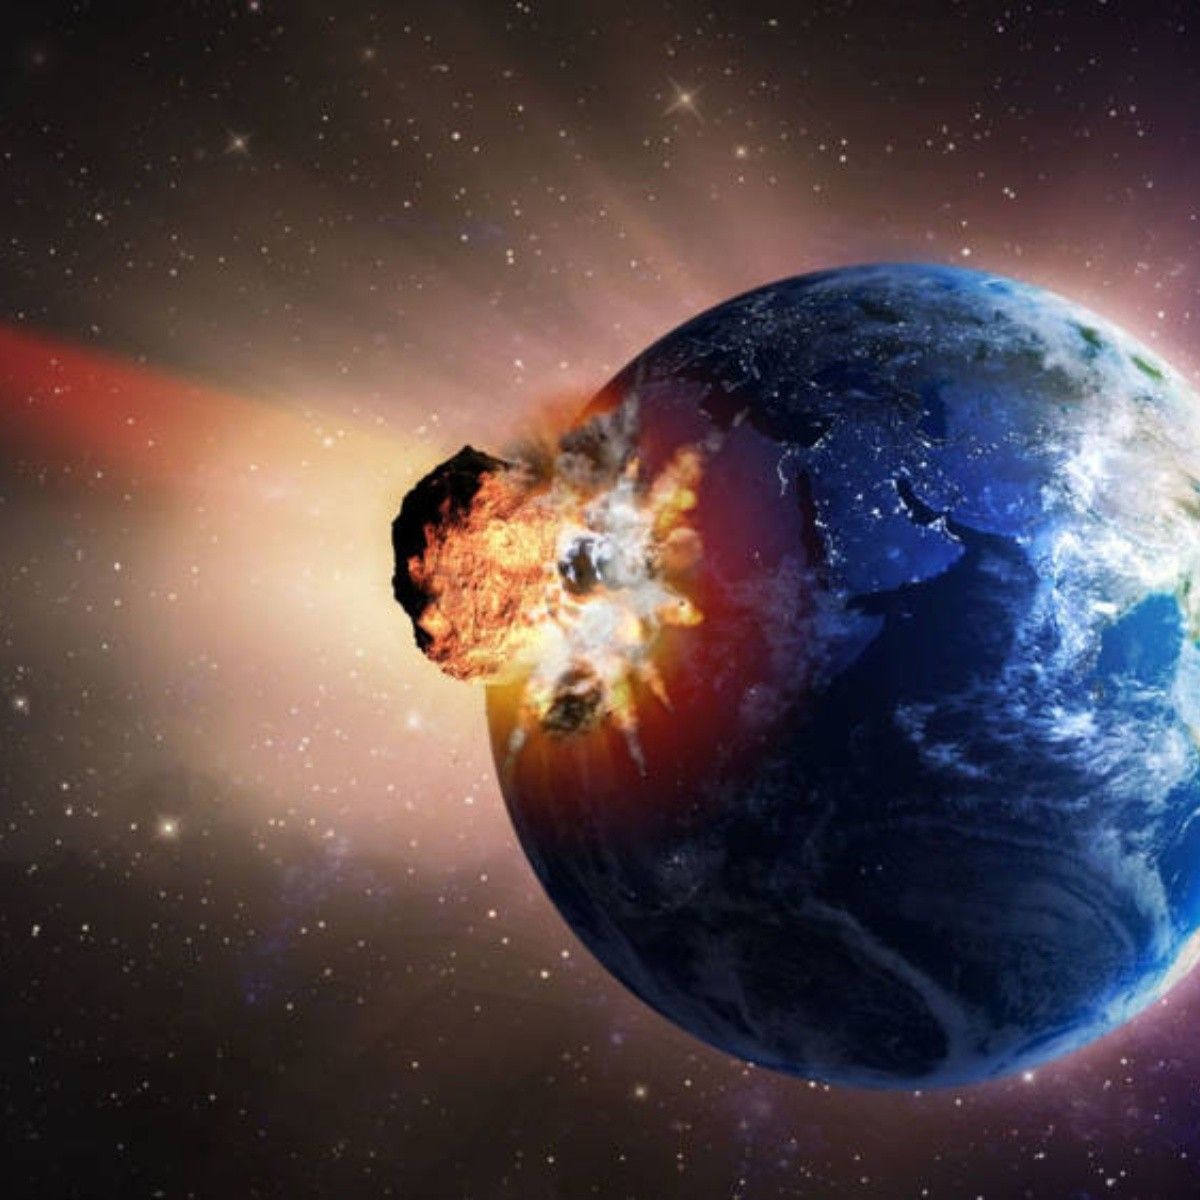 Cientificos descubren que un meteorito impactara en la tierra en mas de 8 años